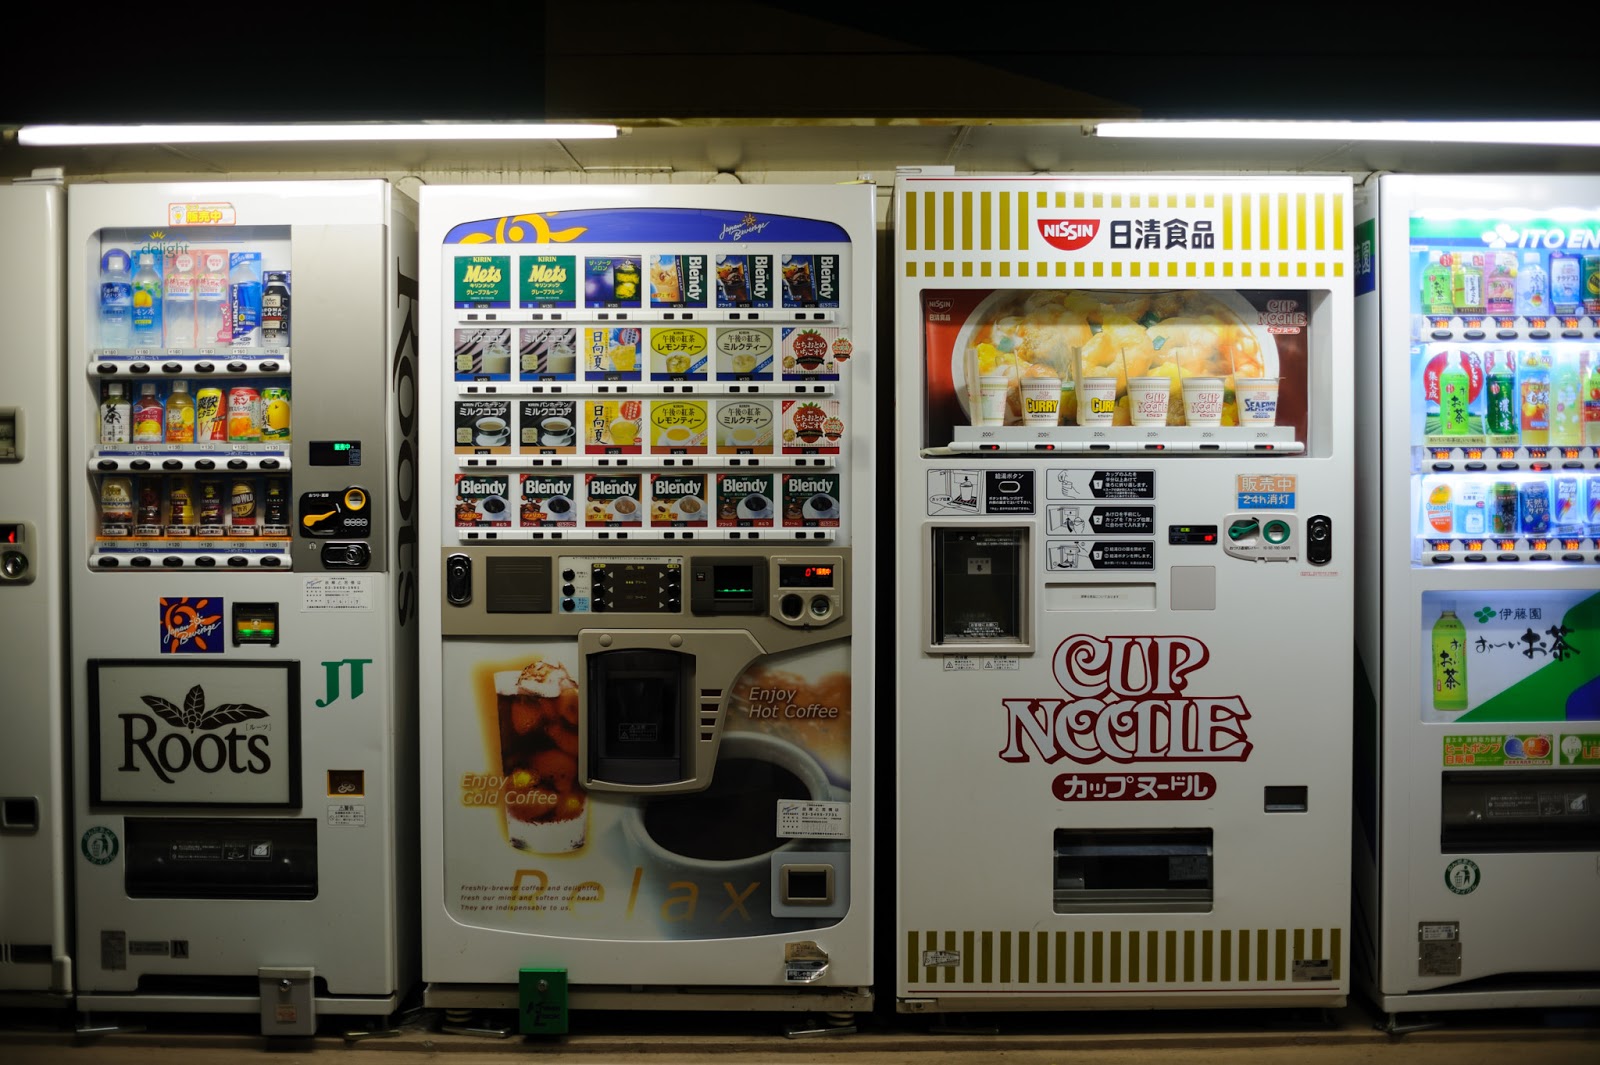 Kenapa Banyak Sekali Vending Machine di Negara Jepang